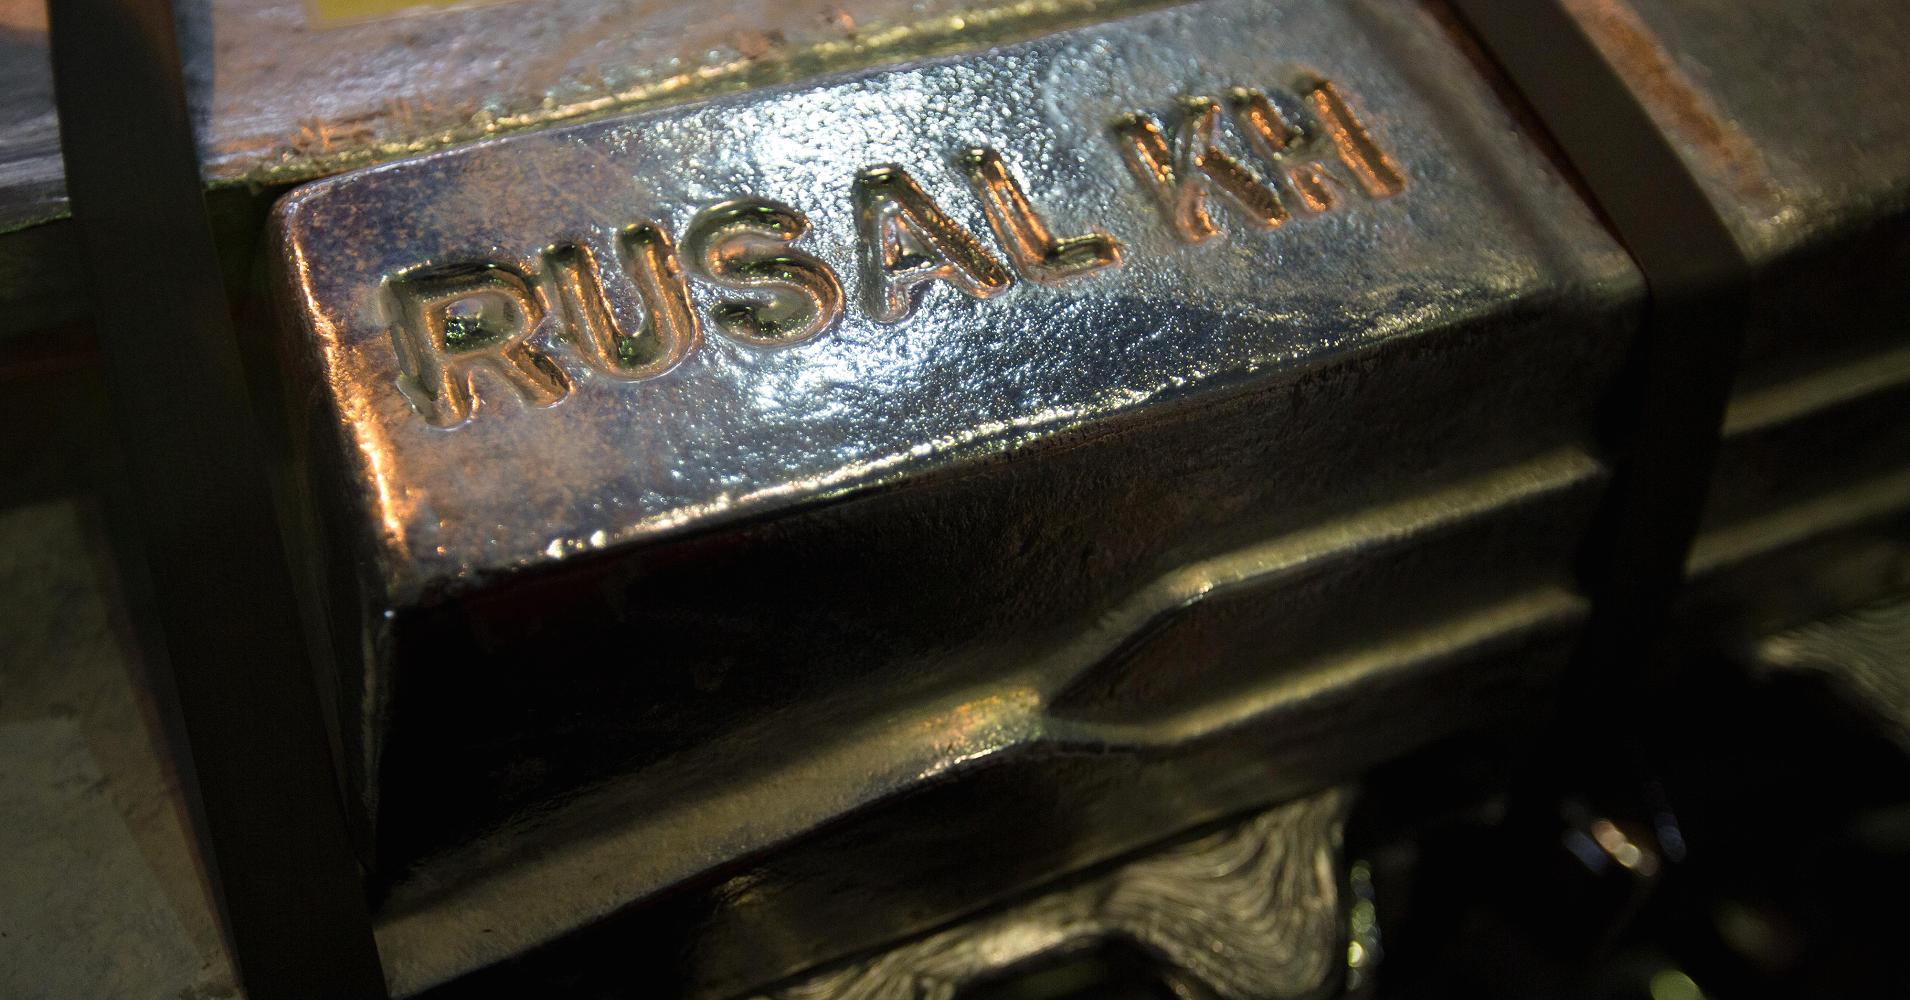 Rusal`s aluminum exports increased 49% in June